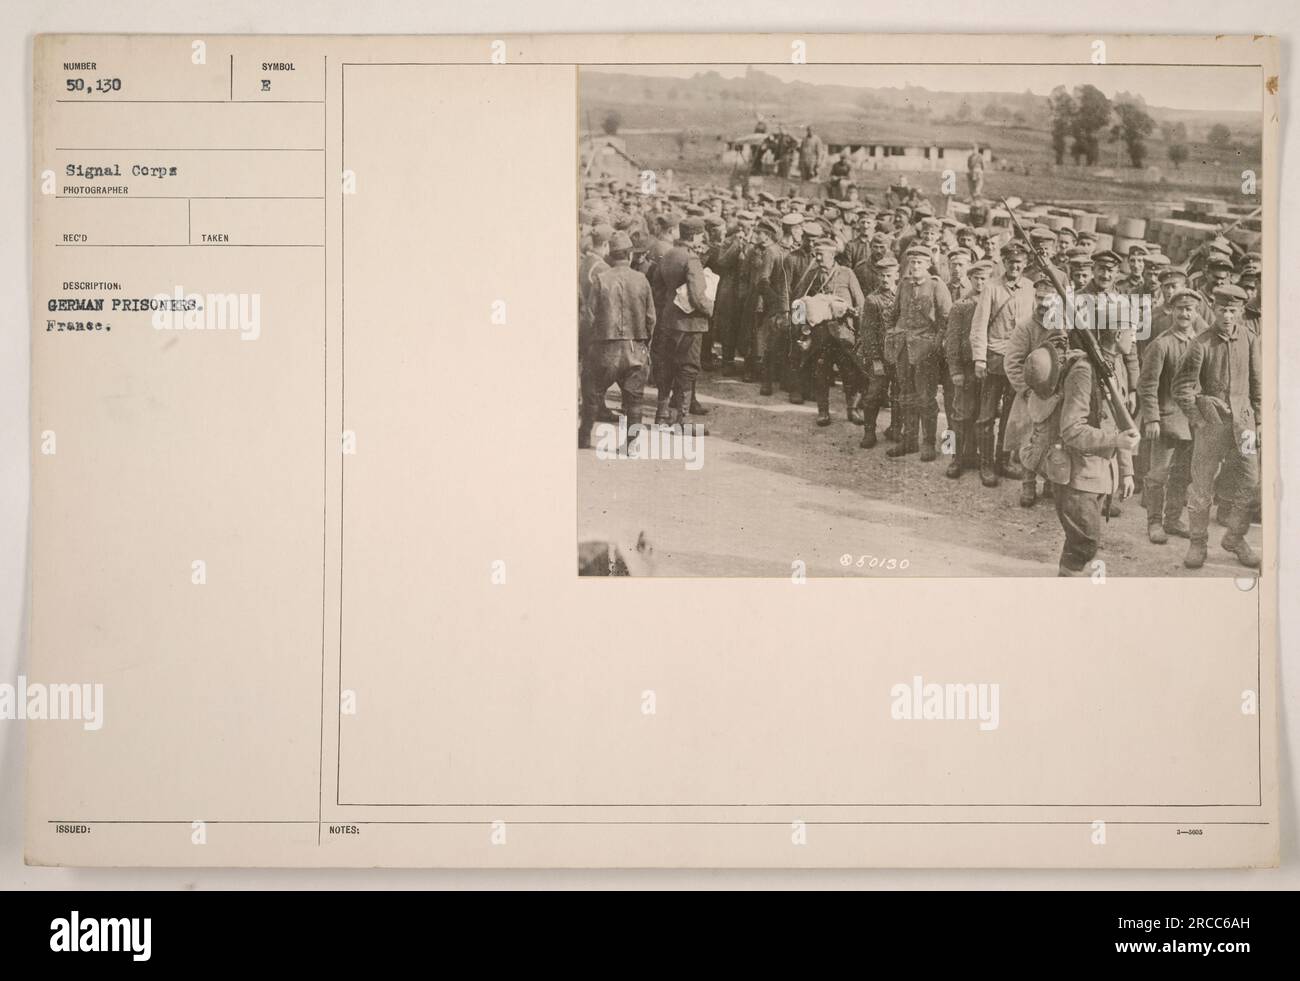 Deutsche Kriegsgefangene, die während des Ersten Weltkriegs in Frankreich gefangen genommen wurden. Dieses Foto wurde von einem Fotografen namens Reco aufgenommen und ist als Nummer 50.130 in der Signal Corps Sammlung gekennzeichnet. Die Gefangenen werden von französischen Soldaten festgenommen. Stockfoto